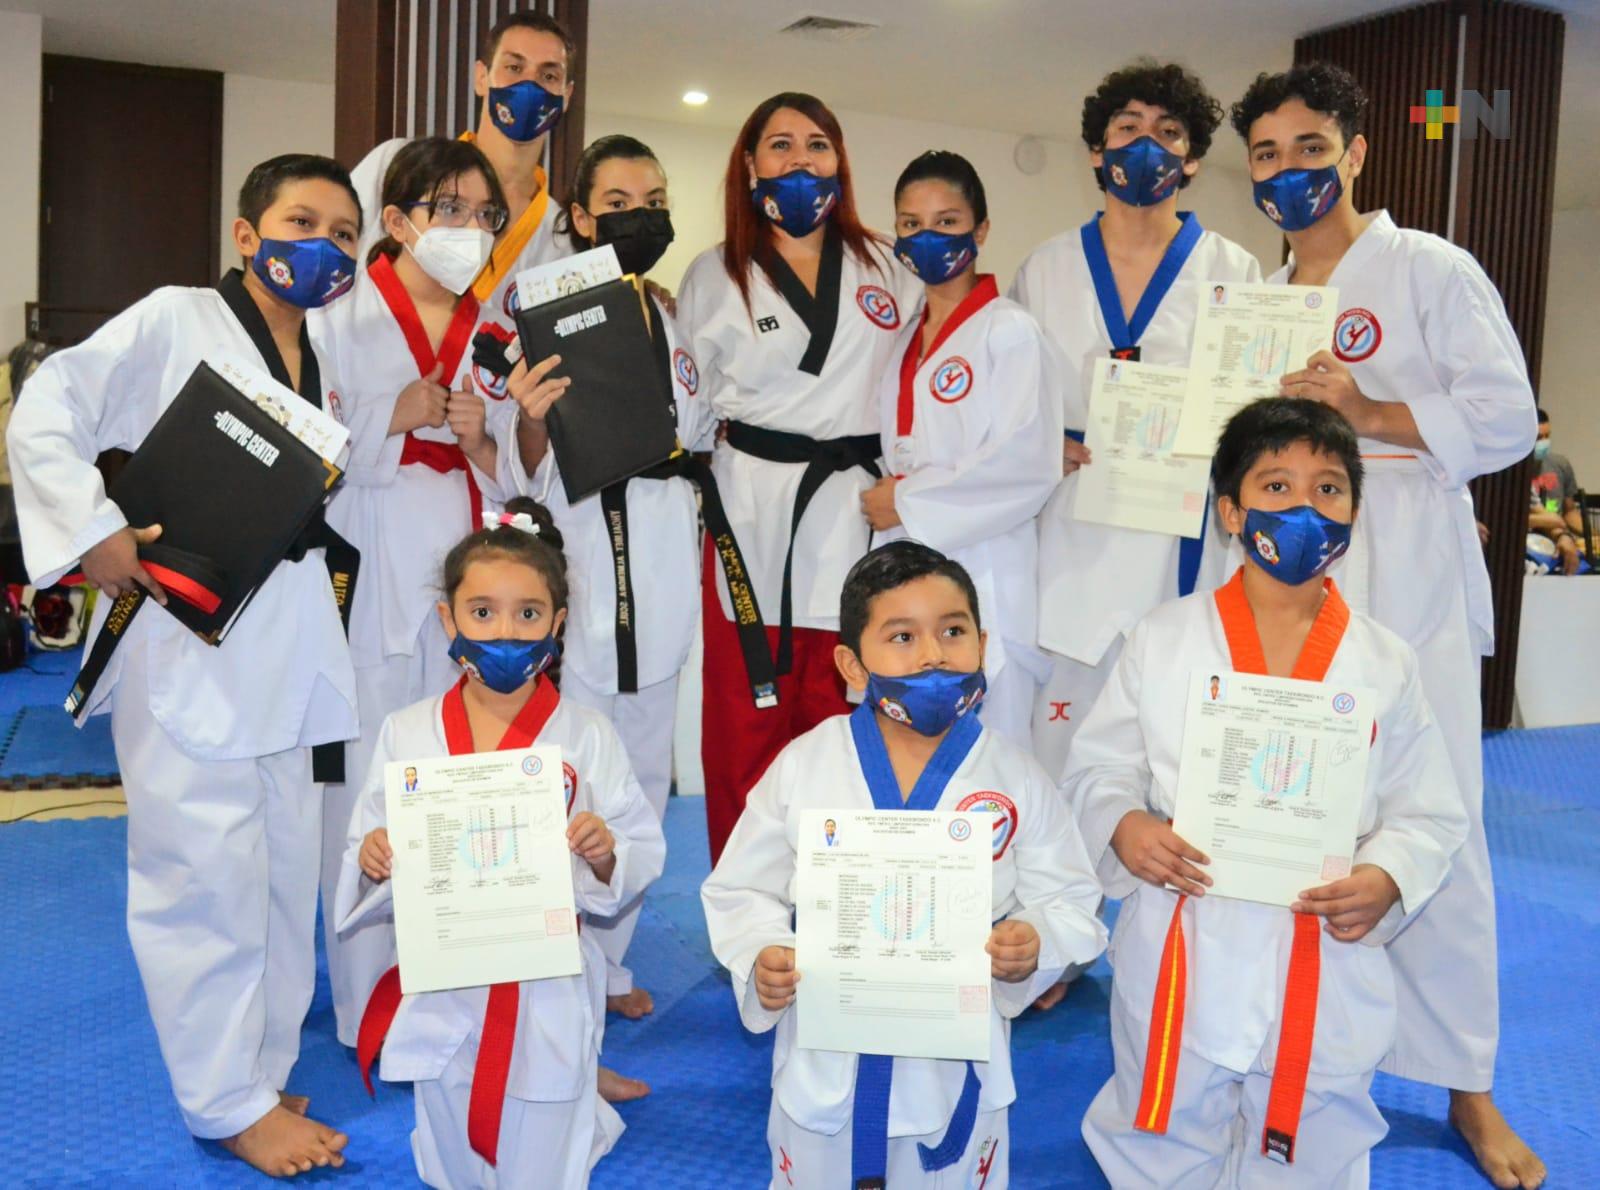 Escuelas de taekwondo River, Veracruz y Sportway realizaron examen de grados